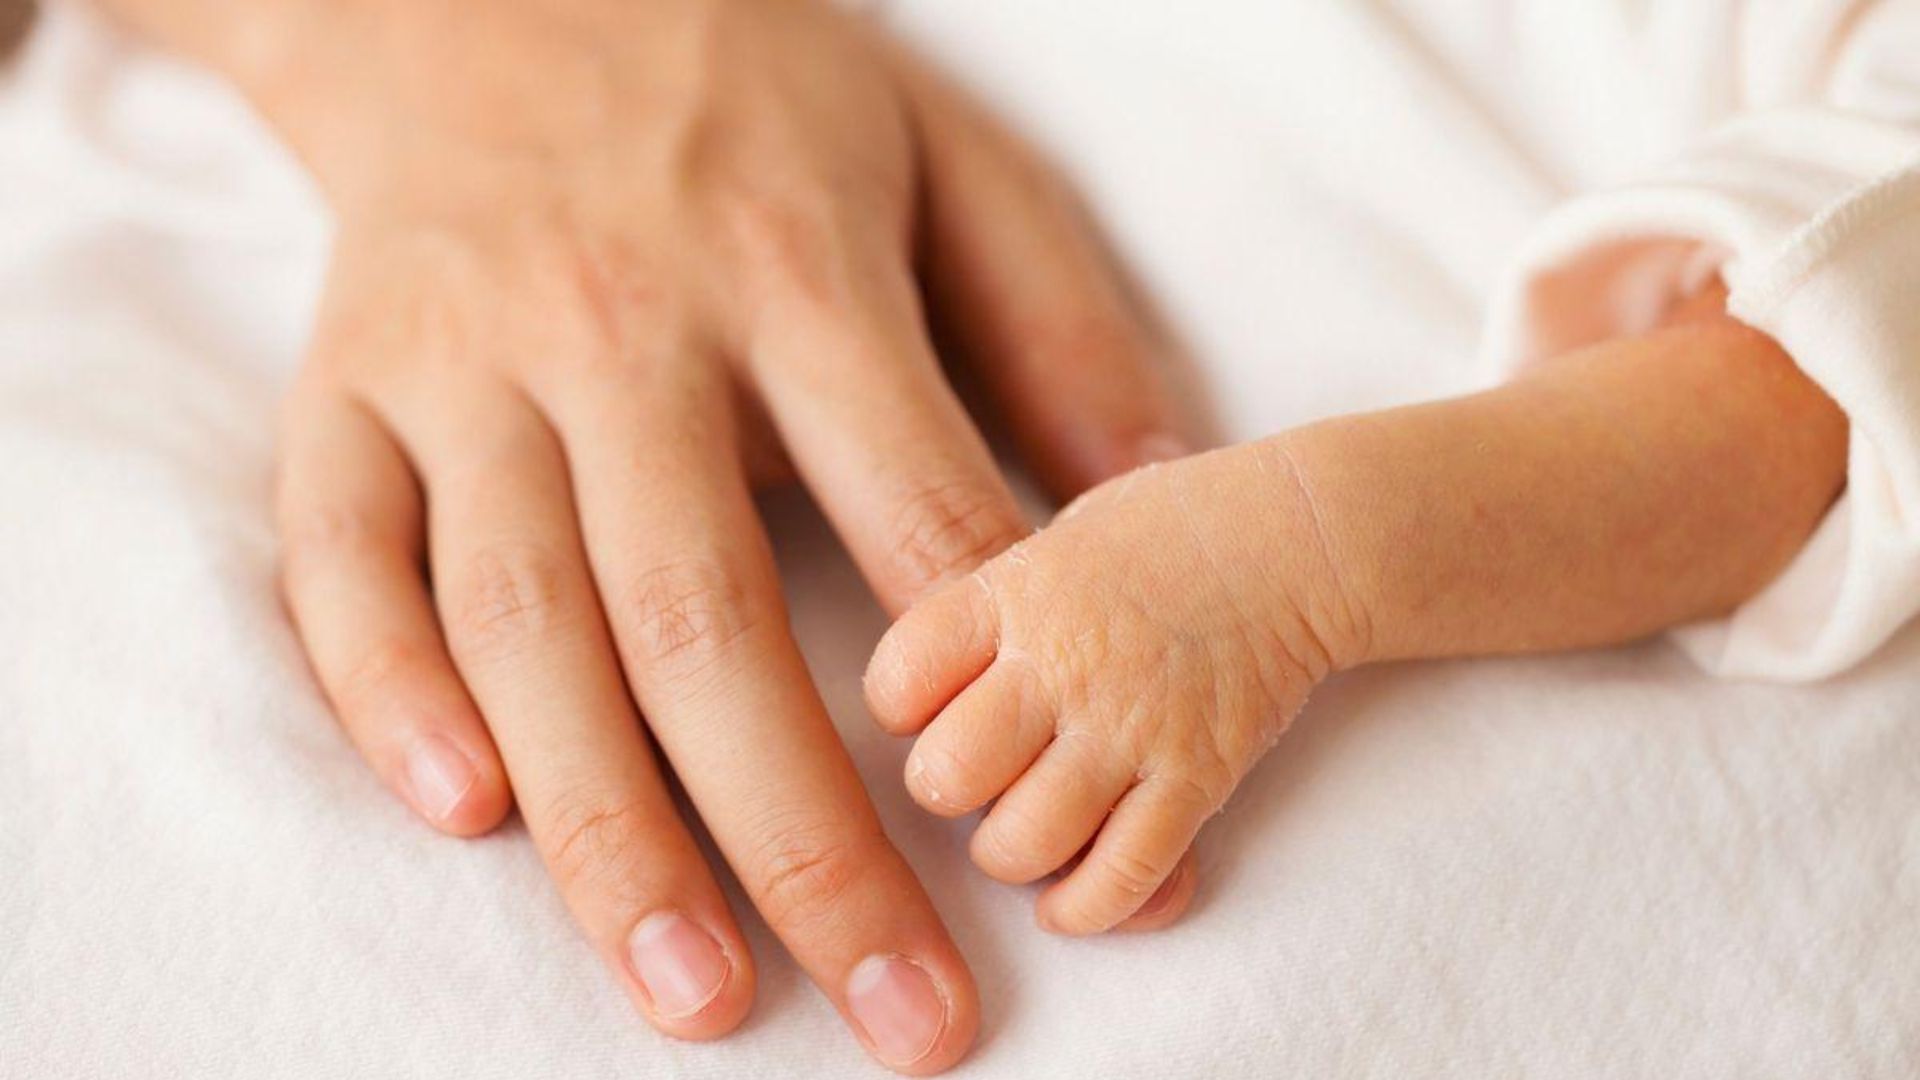 mão de adulto e mão de bebê prematuro